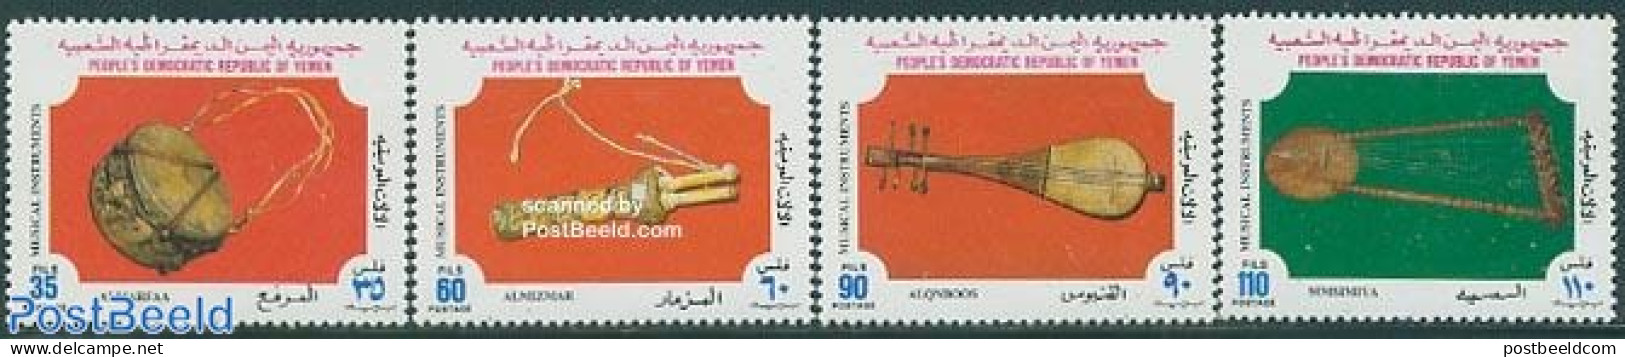 Yemen, South 1978 Music Instruments 4v, Mint NH, Performance Art - Music - Musical Instruments - Musik